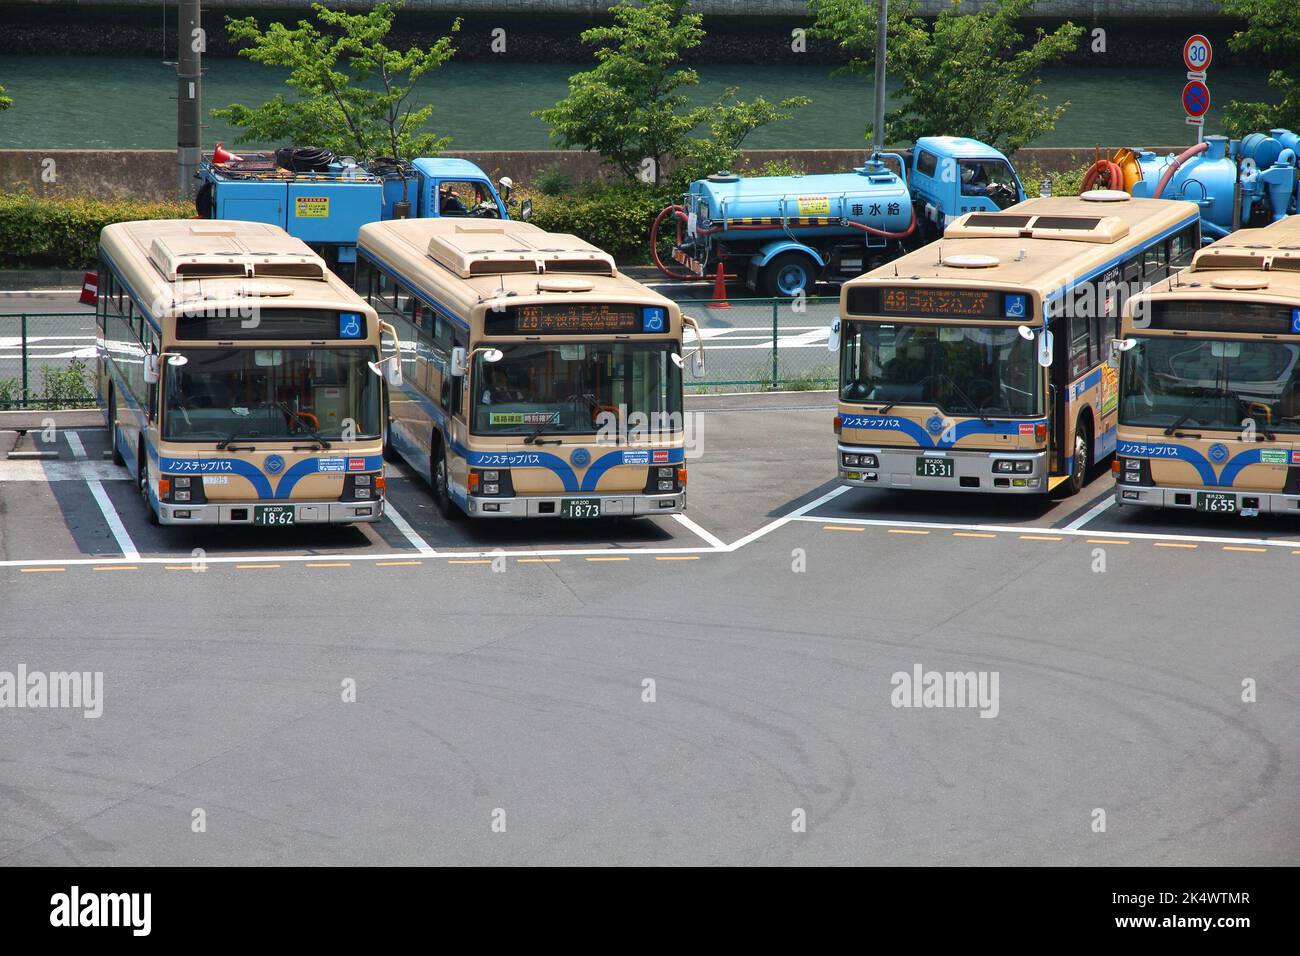 YOKOHAMA, JAPAN - 10. MAI 2012: Isuzu City Buses in Yokohama, Japan. Yokohama ist nach Bevölkerung die 2. größte Stadt Japans. Stockfoto